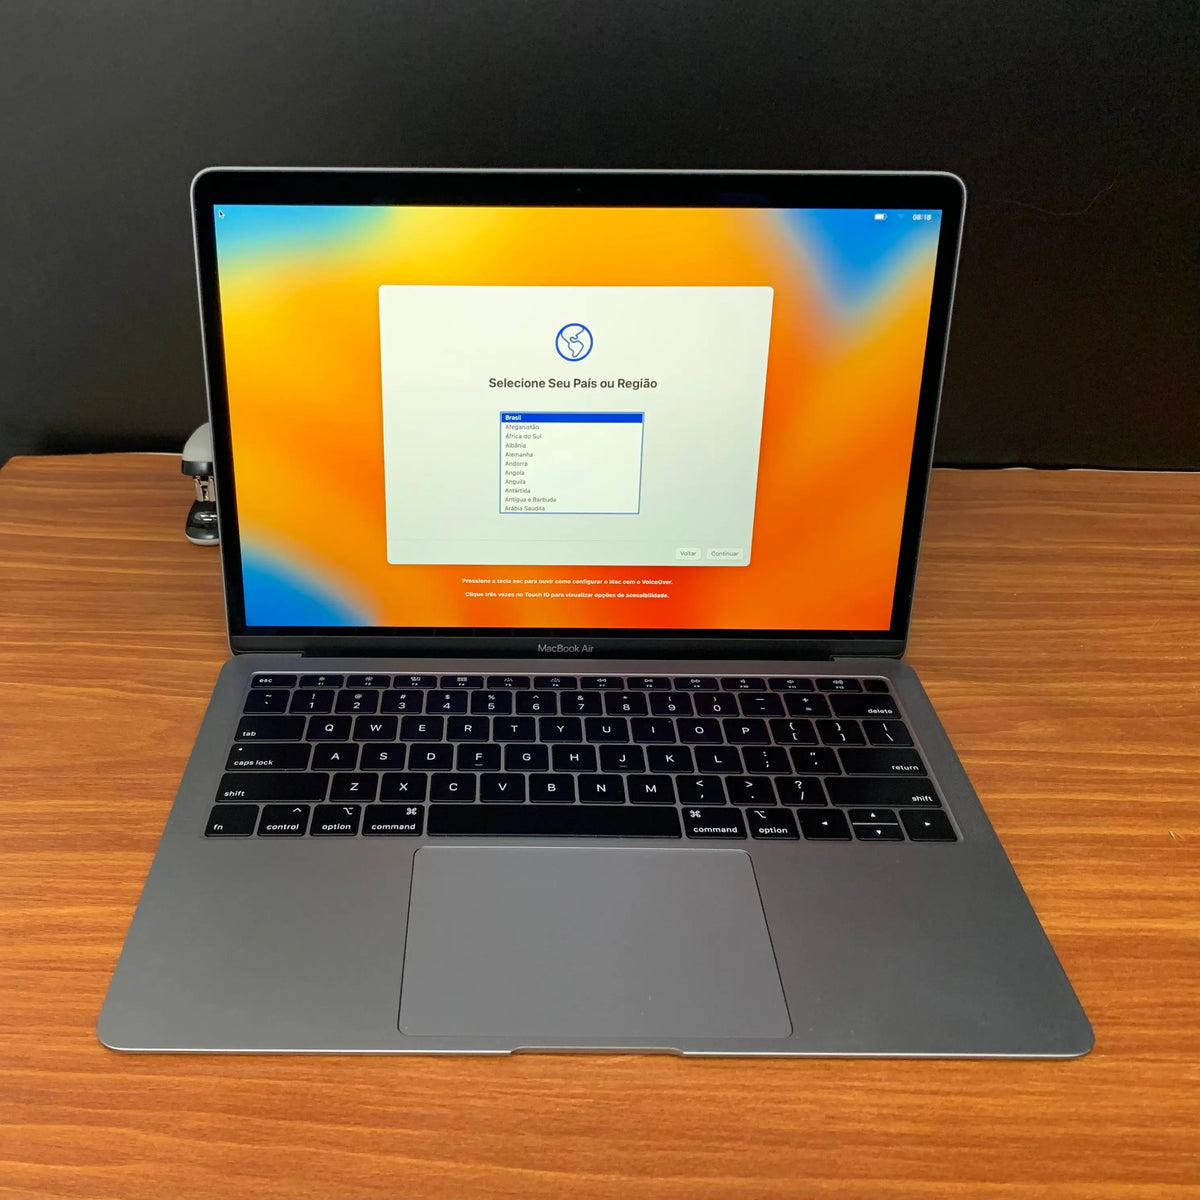 Comprar MacBook Air usado - Macbook Air 13 i5 1.6GHZ 2019 - TrocaTech Seminovos